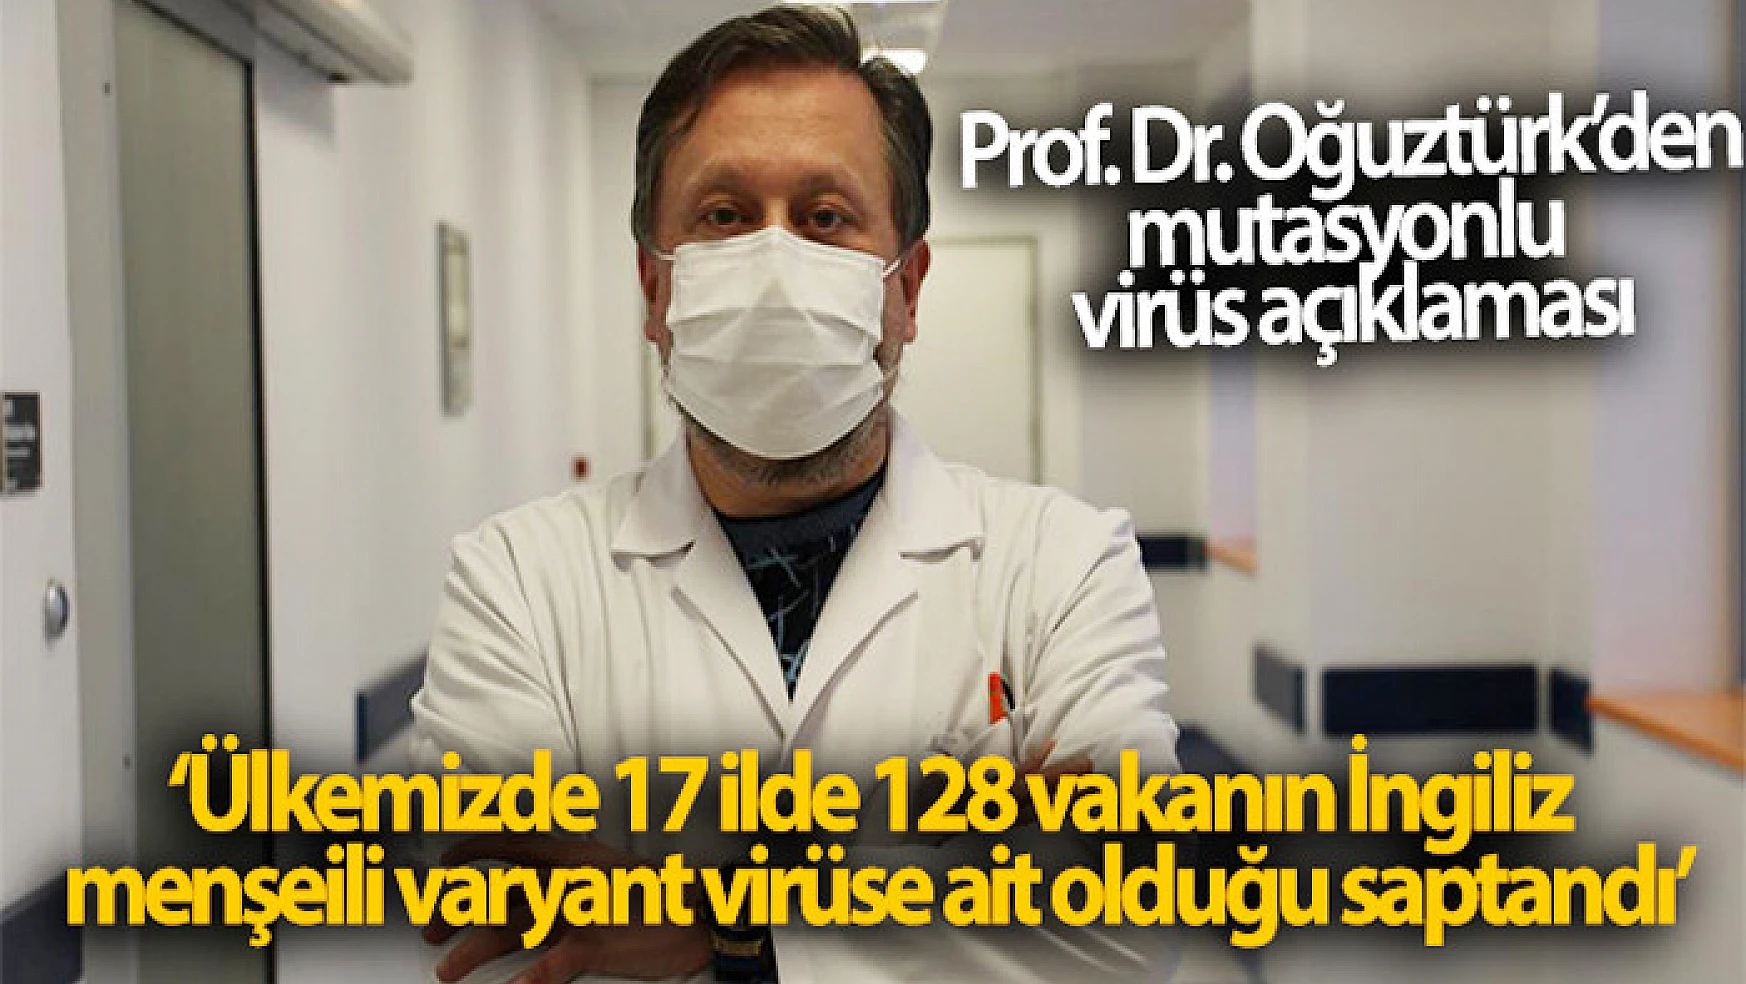 Prof. Dr. Oğuztürk, mutasyonlu virüsün nasıl tespit edildiğini anlattı